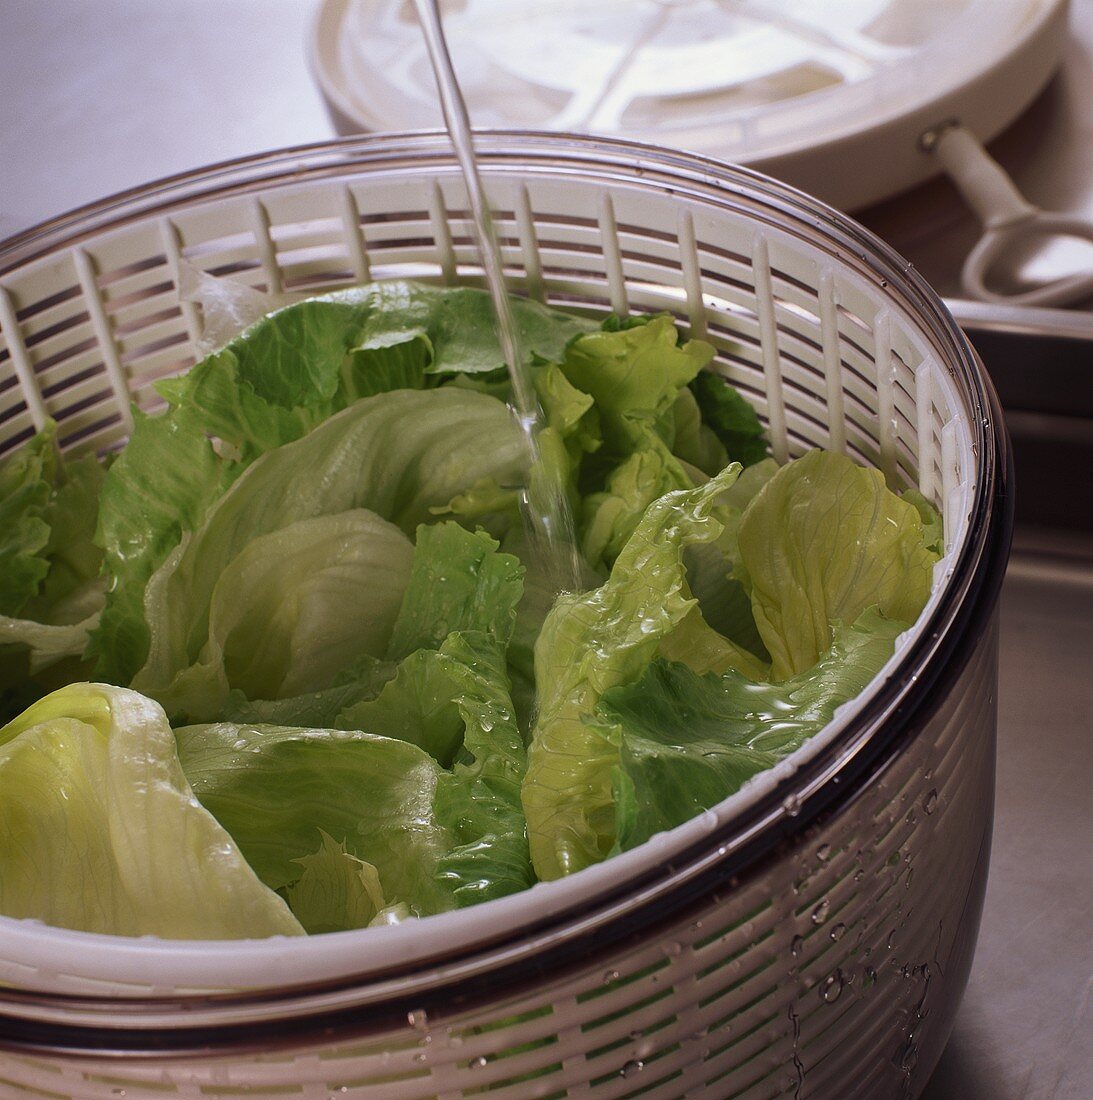 Washing iceberg lettuce in salad spinner